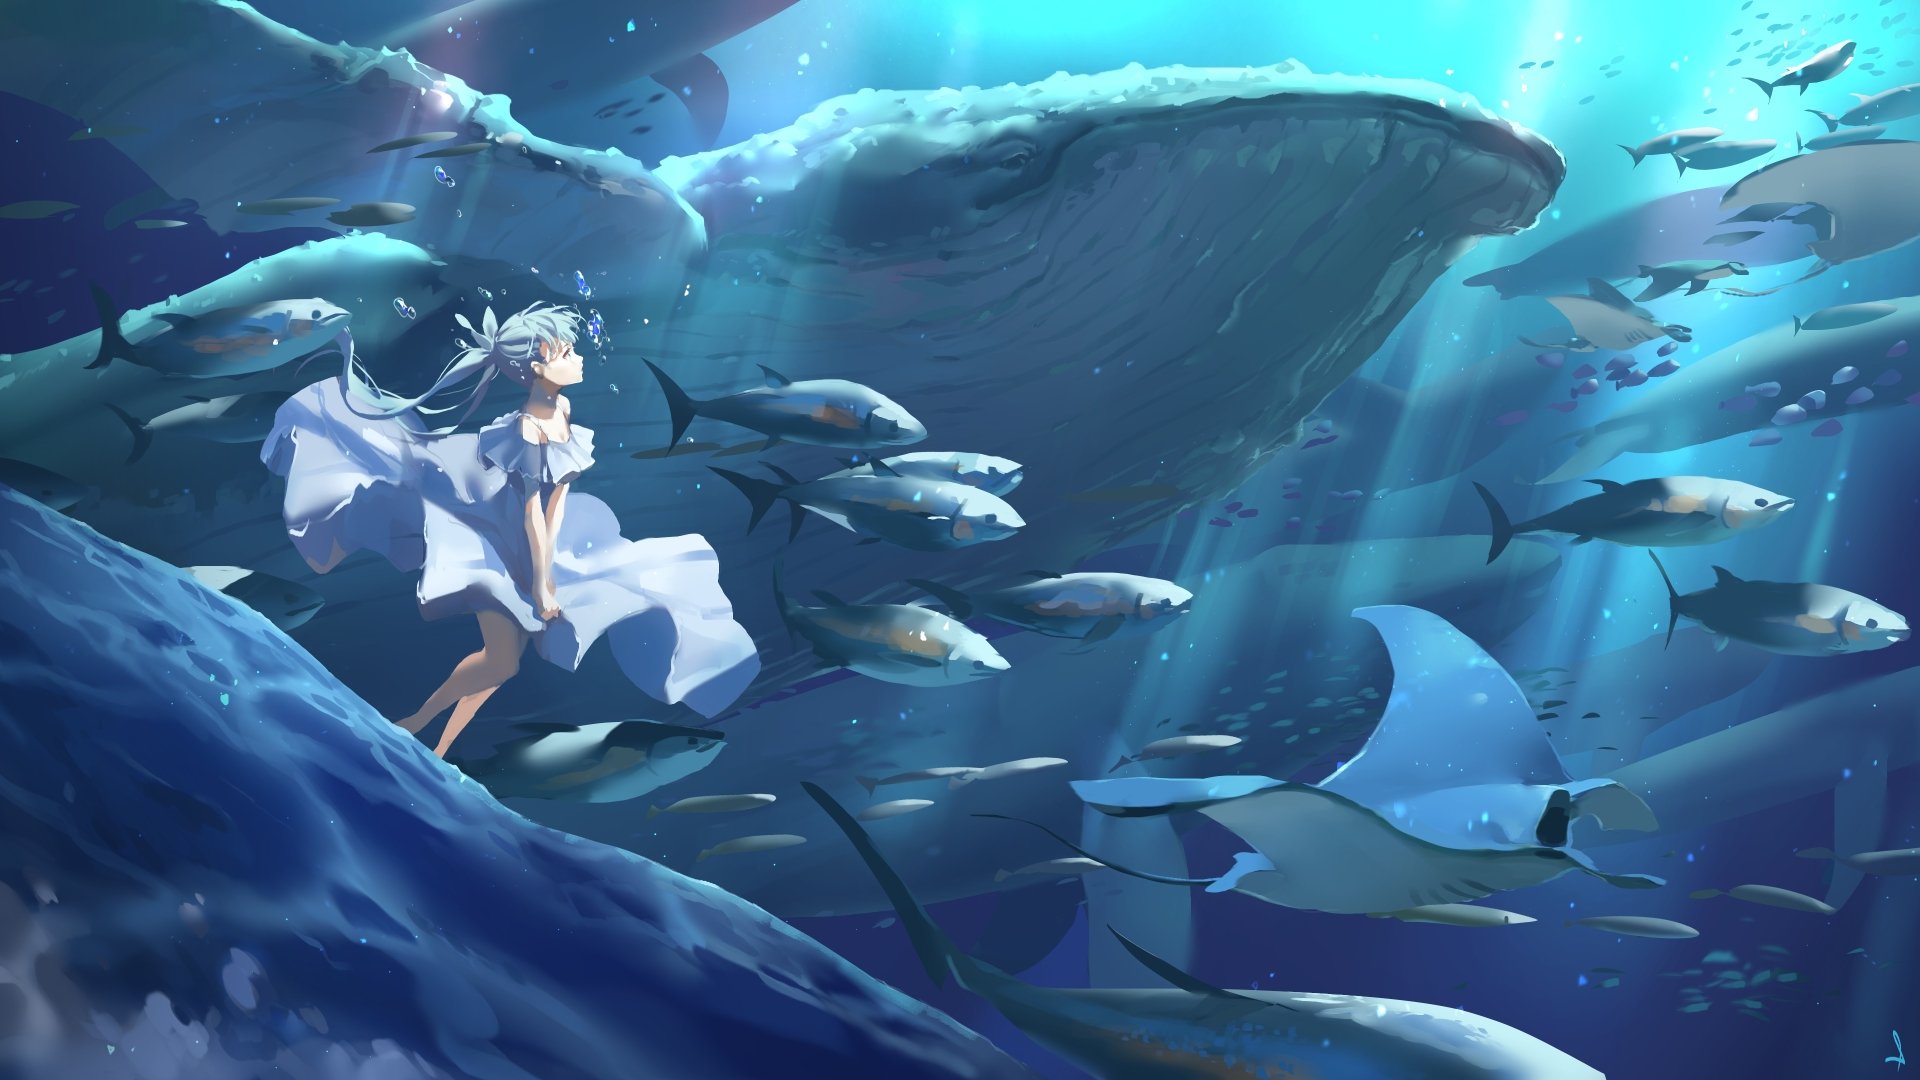 Thế giới dưới đại dương luôn là cảm hứng vô tận cho những nhà thiết kế anime. Hình ảnh của một cô gái trong anime underwater cùng với động vật biển đầy màu sắc sẽ giúp bạn chiêm ngưỡng những khả năng tuyệt vời mà thế giới anime mang lại.